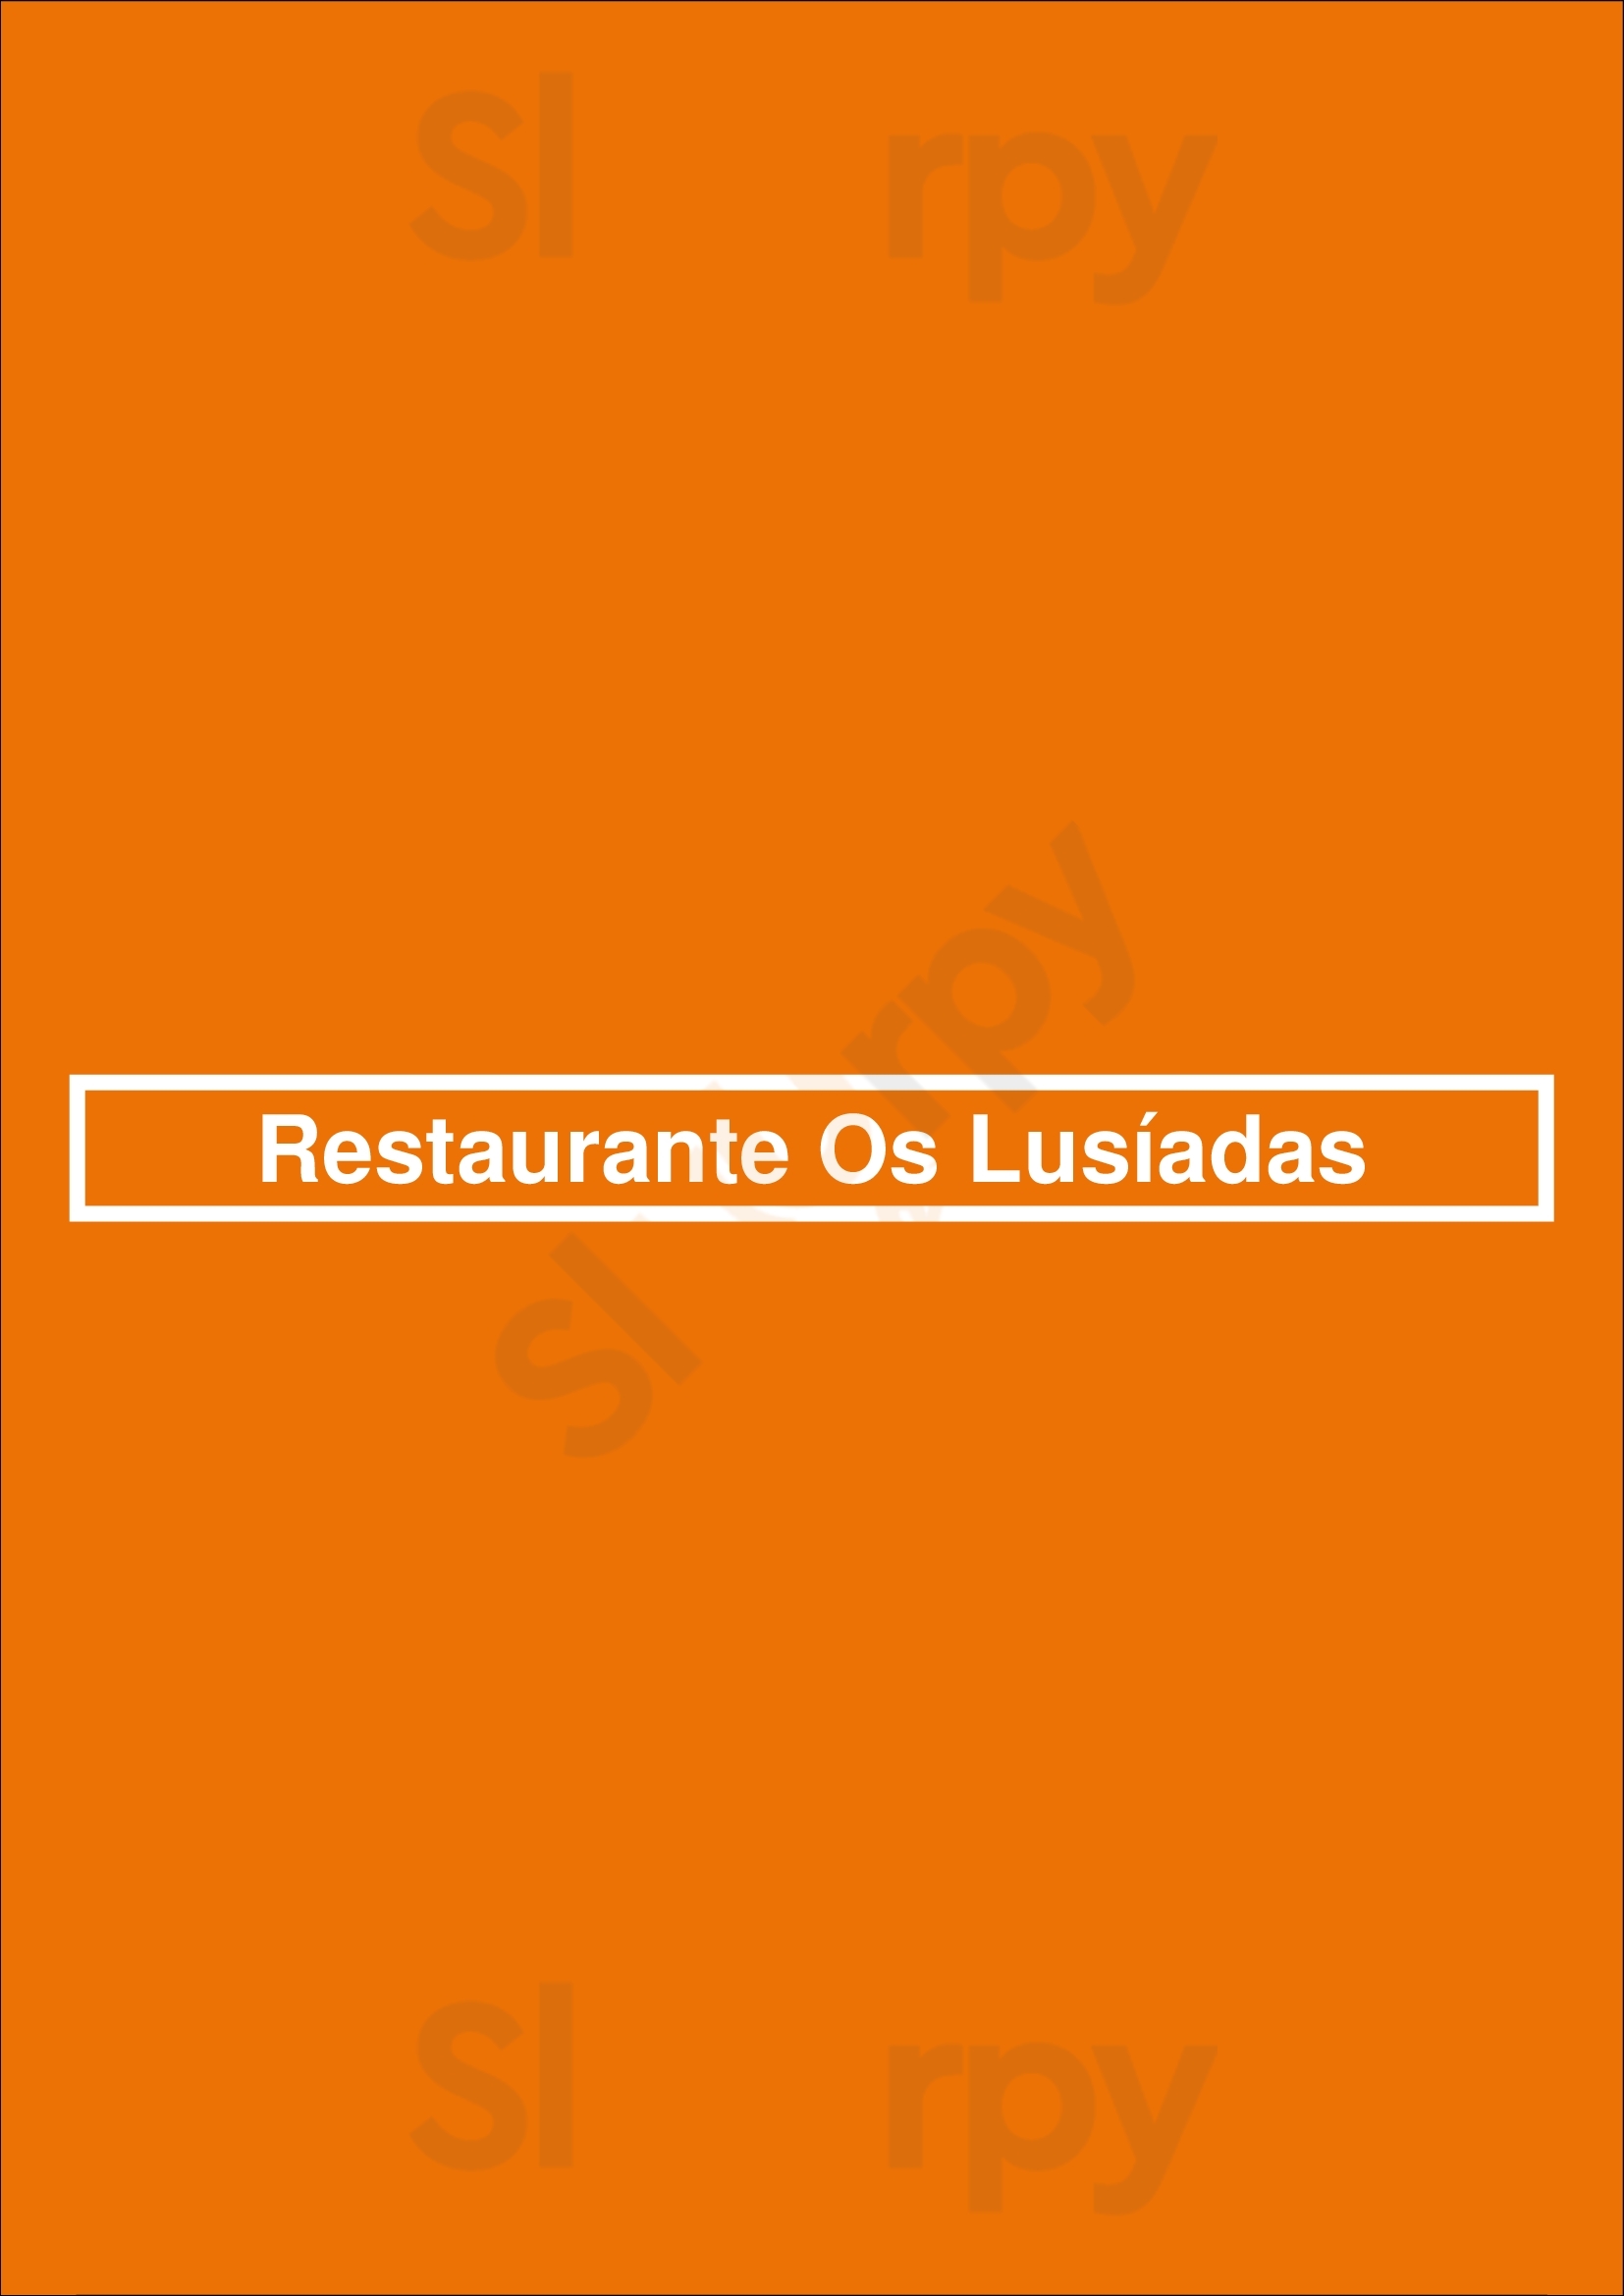 Restaurante Os Lusíadas Matosinhos Menu - 1